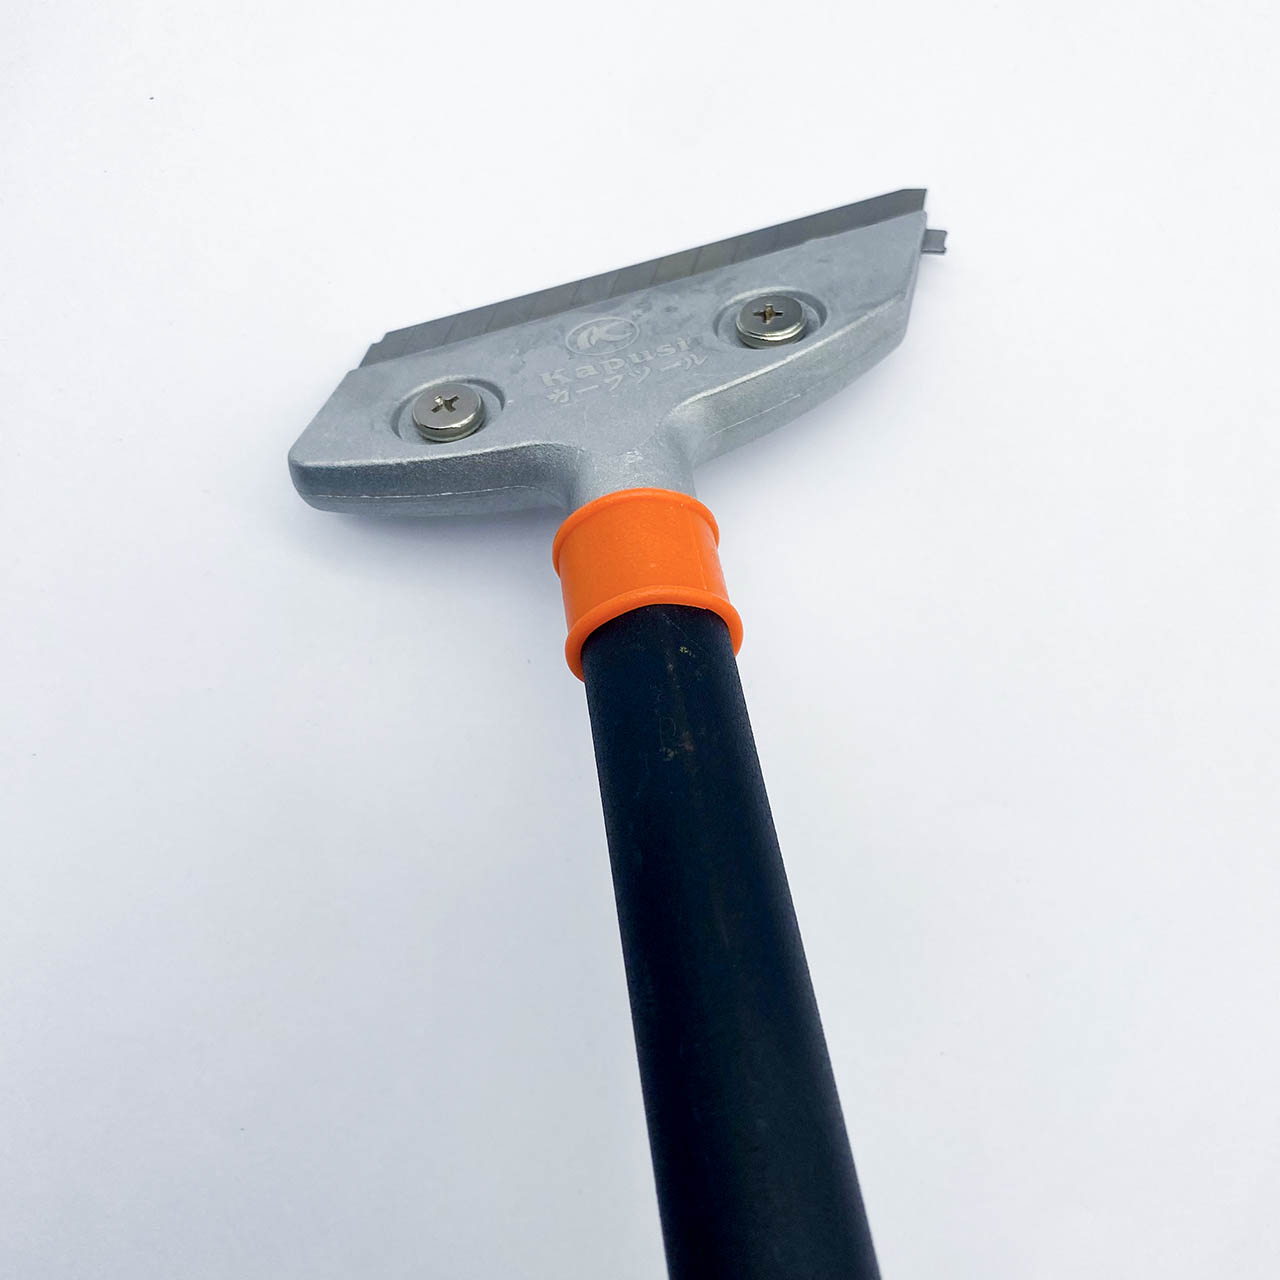 Lưỡi dao có thể thay thế dễ dàng chỉ bằng cách vặn 2 con ôc cố định dao 